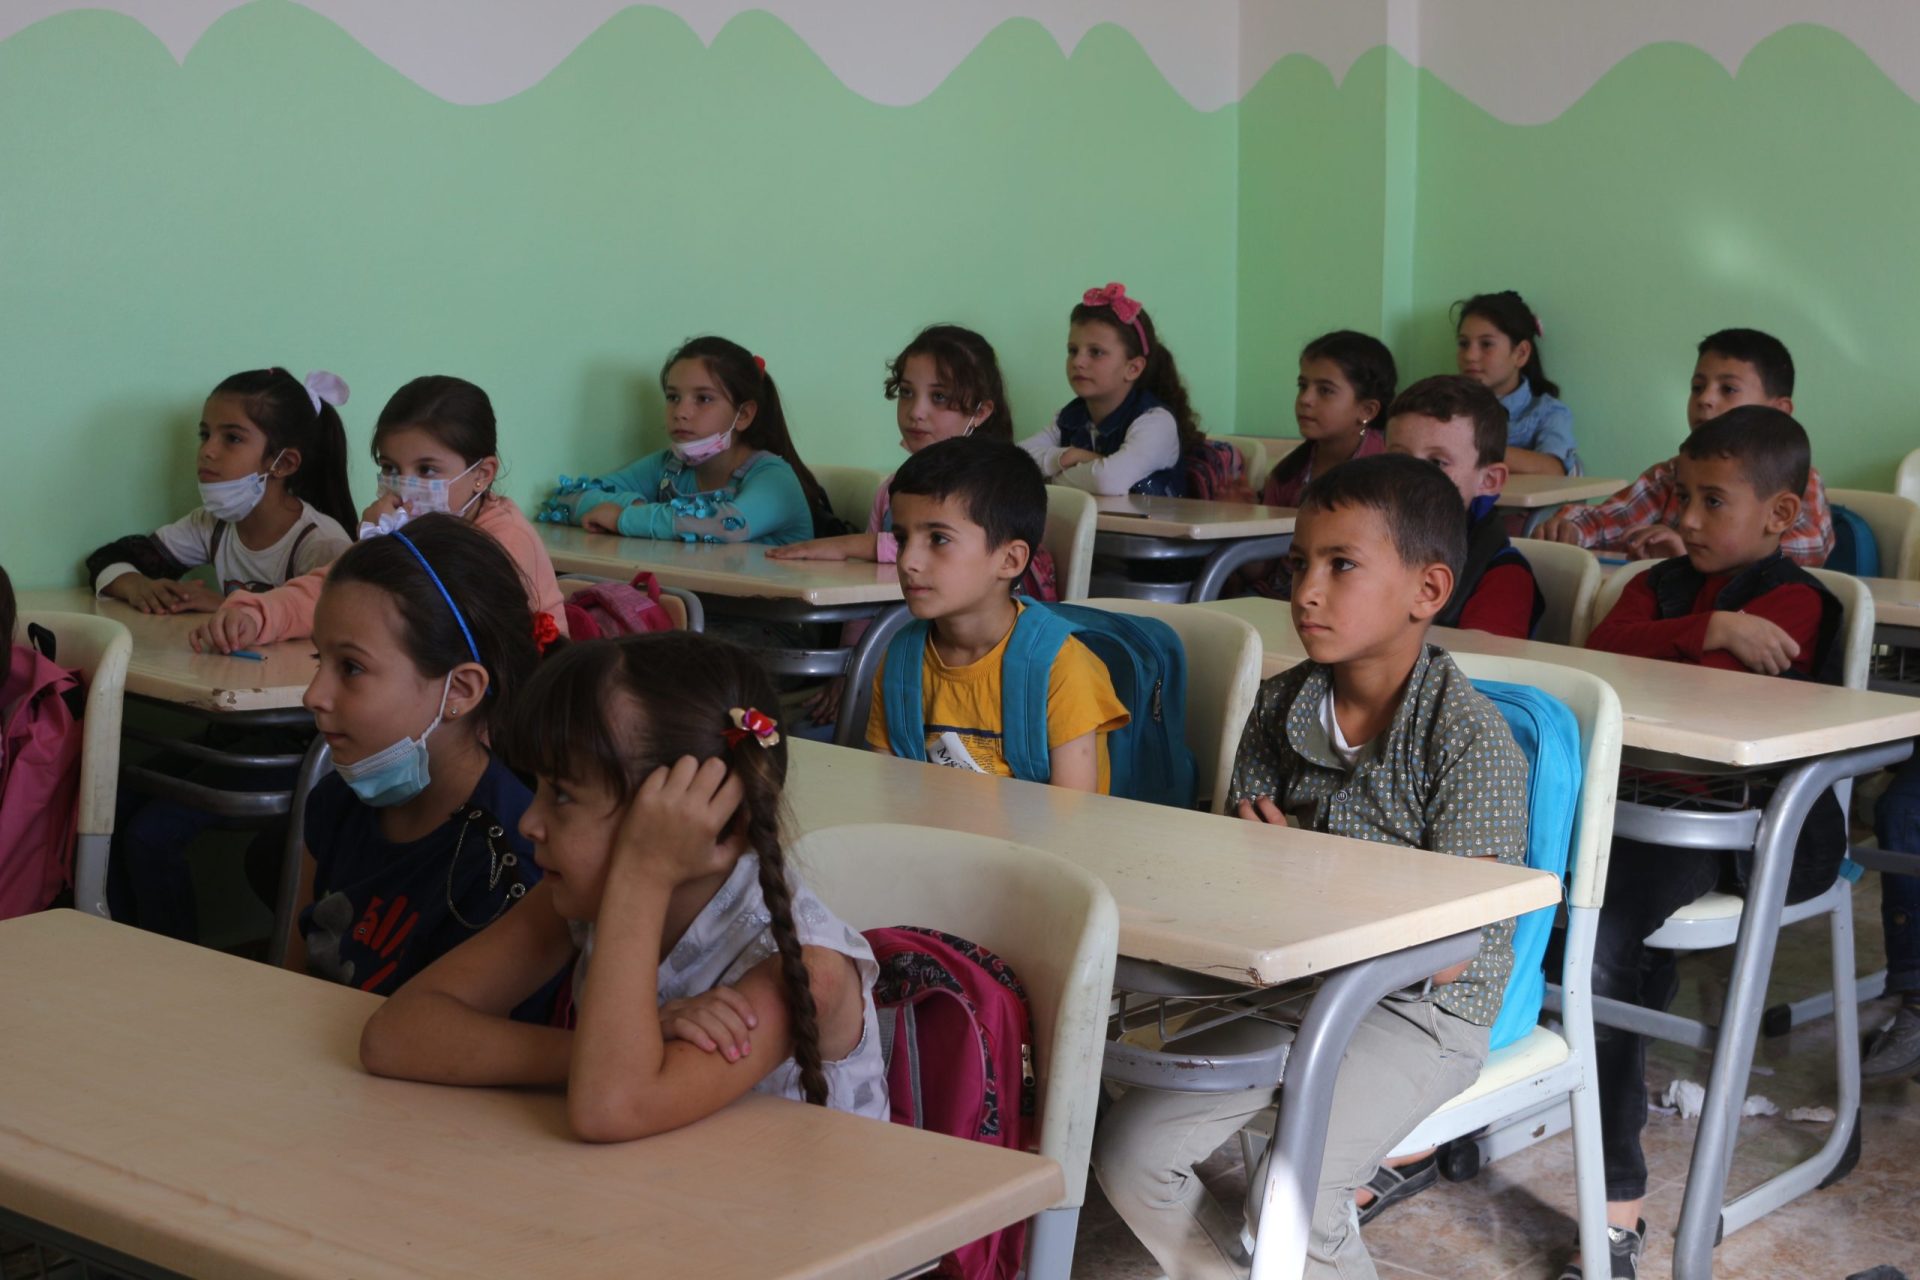 Coût d'impression de 3 millions de dollars, le livre scolaire rare dans le nord de la Syrie